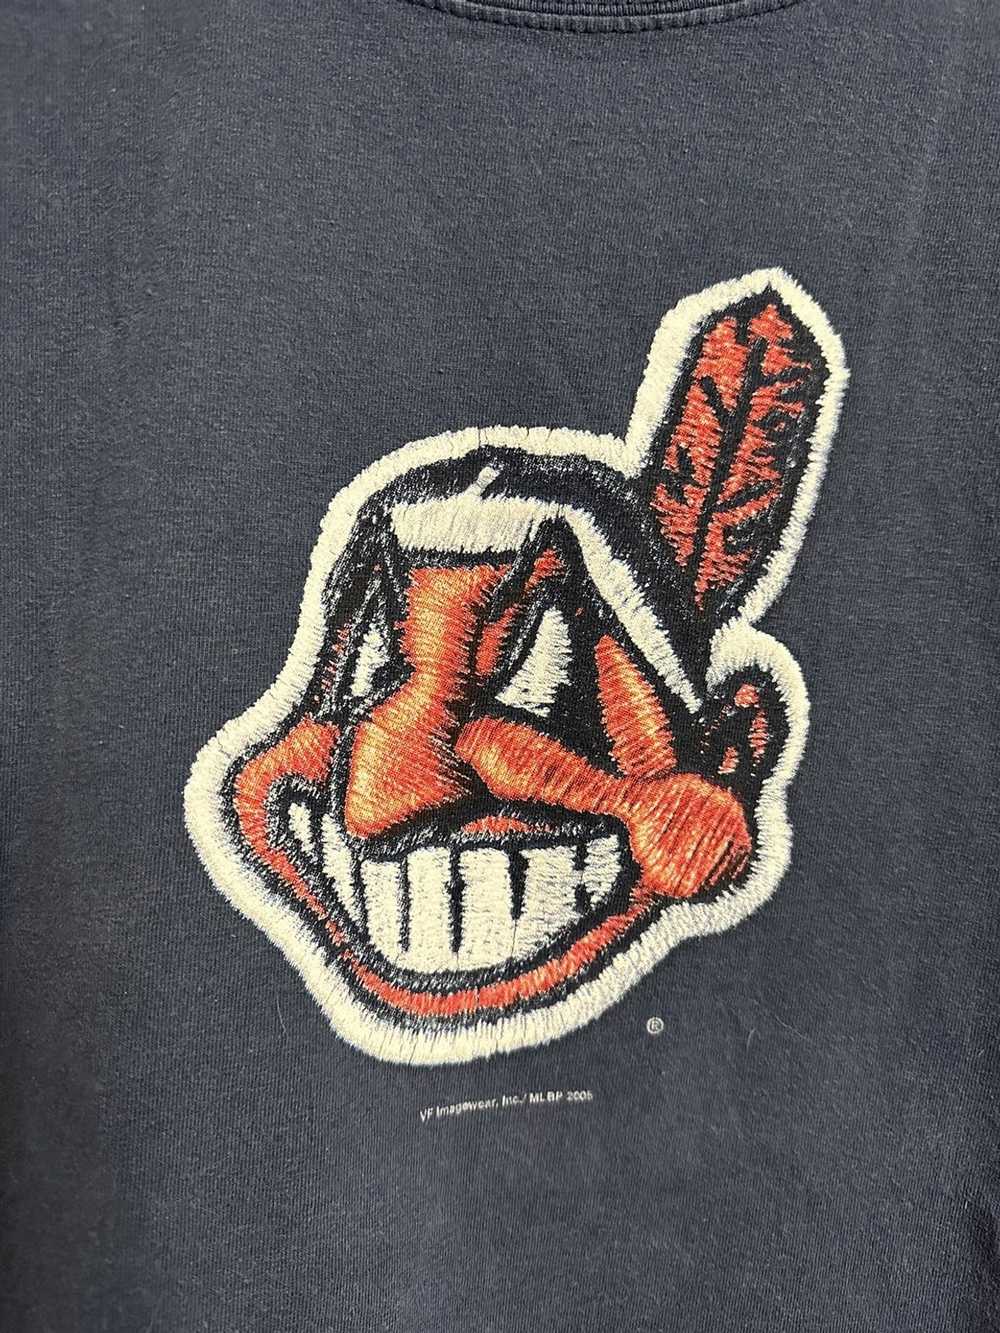 Lee × MLB × Vintage Vintage 00s 2005 Cleveland in… - image 3